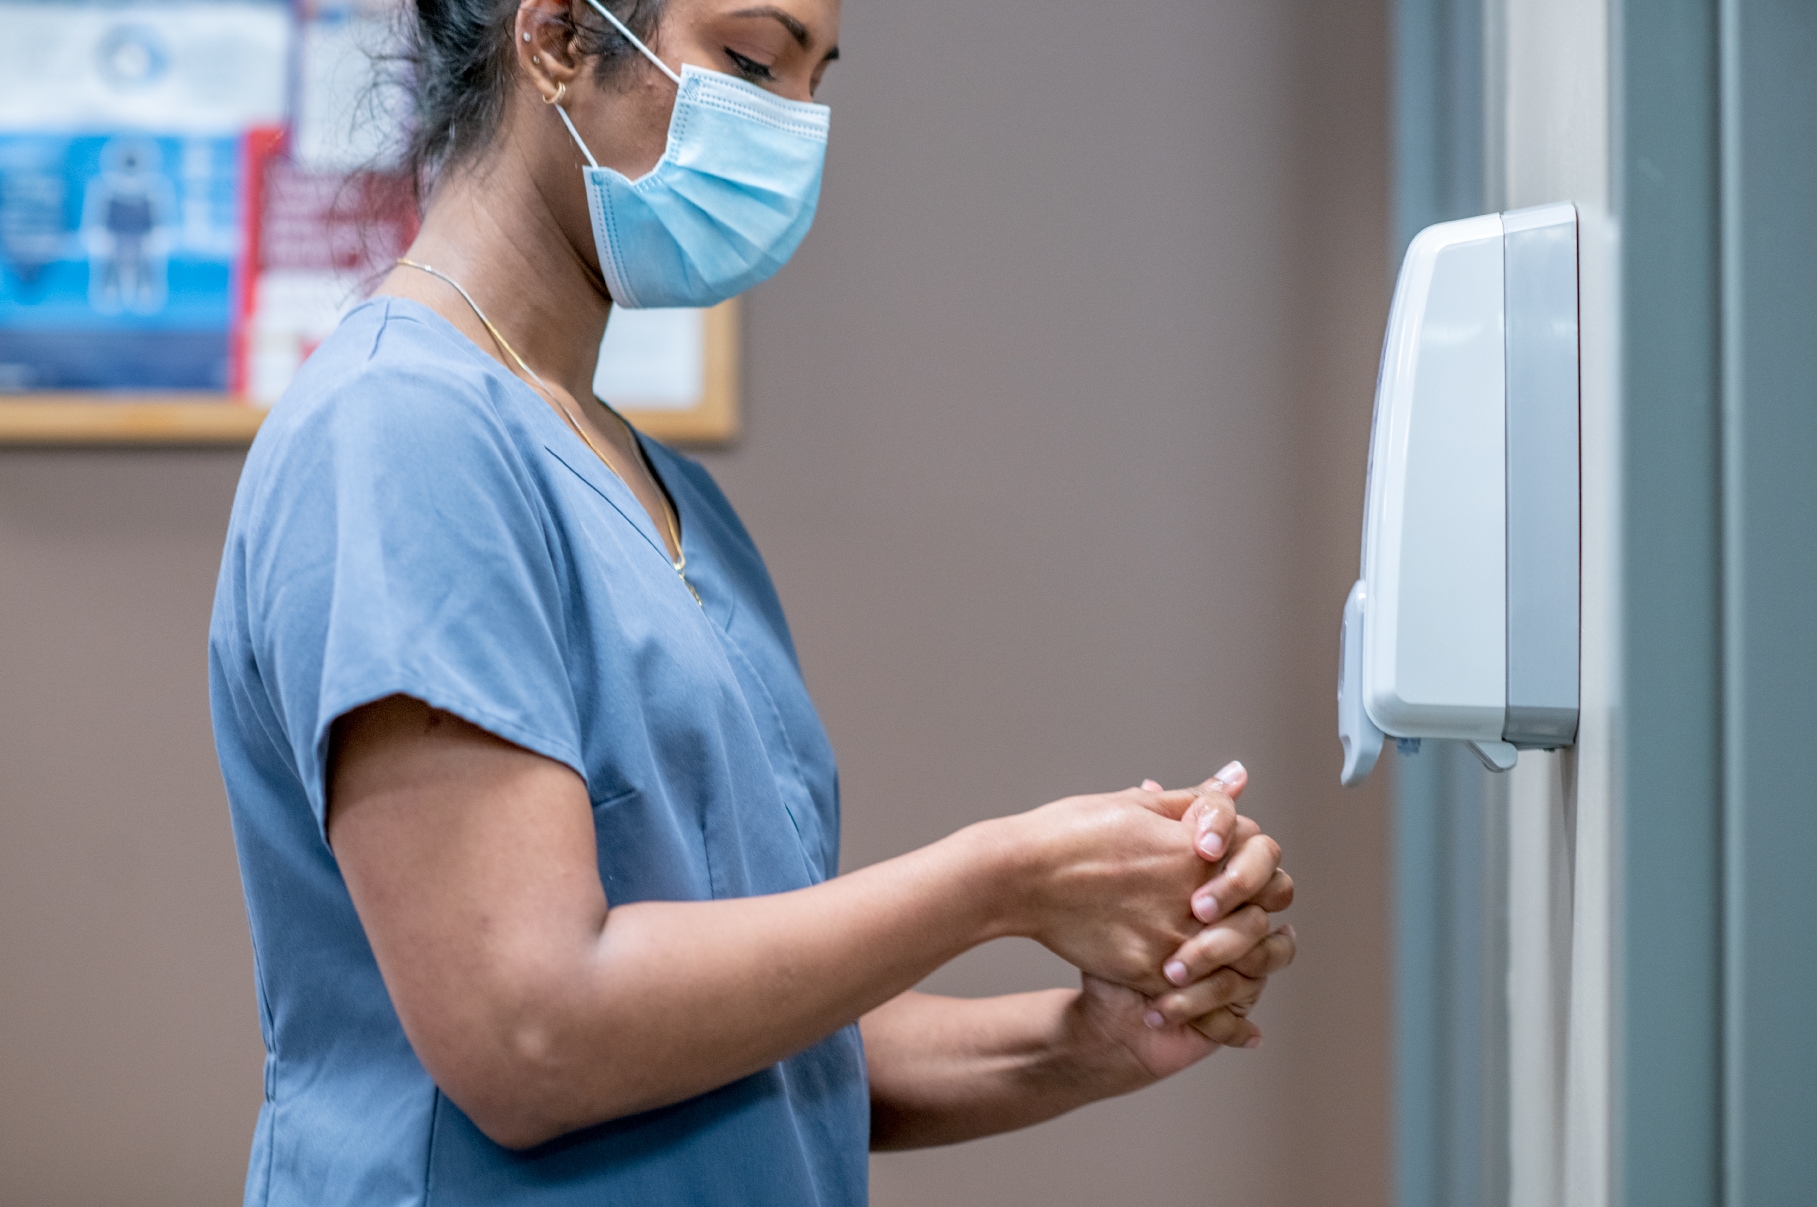 healthcare worker using hand sanitizing dispenser